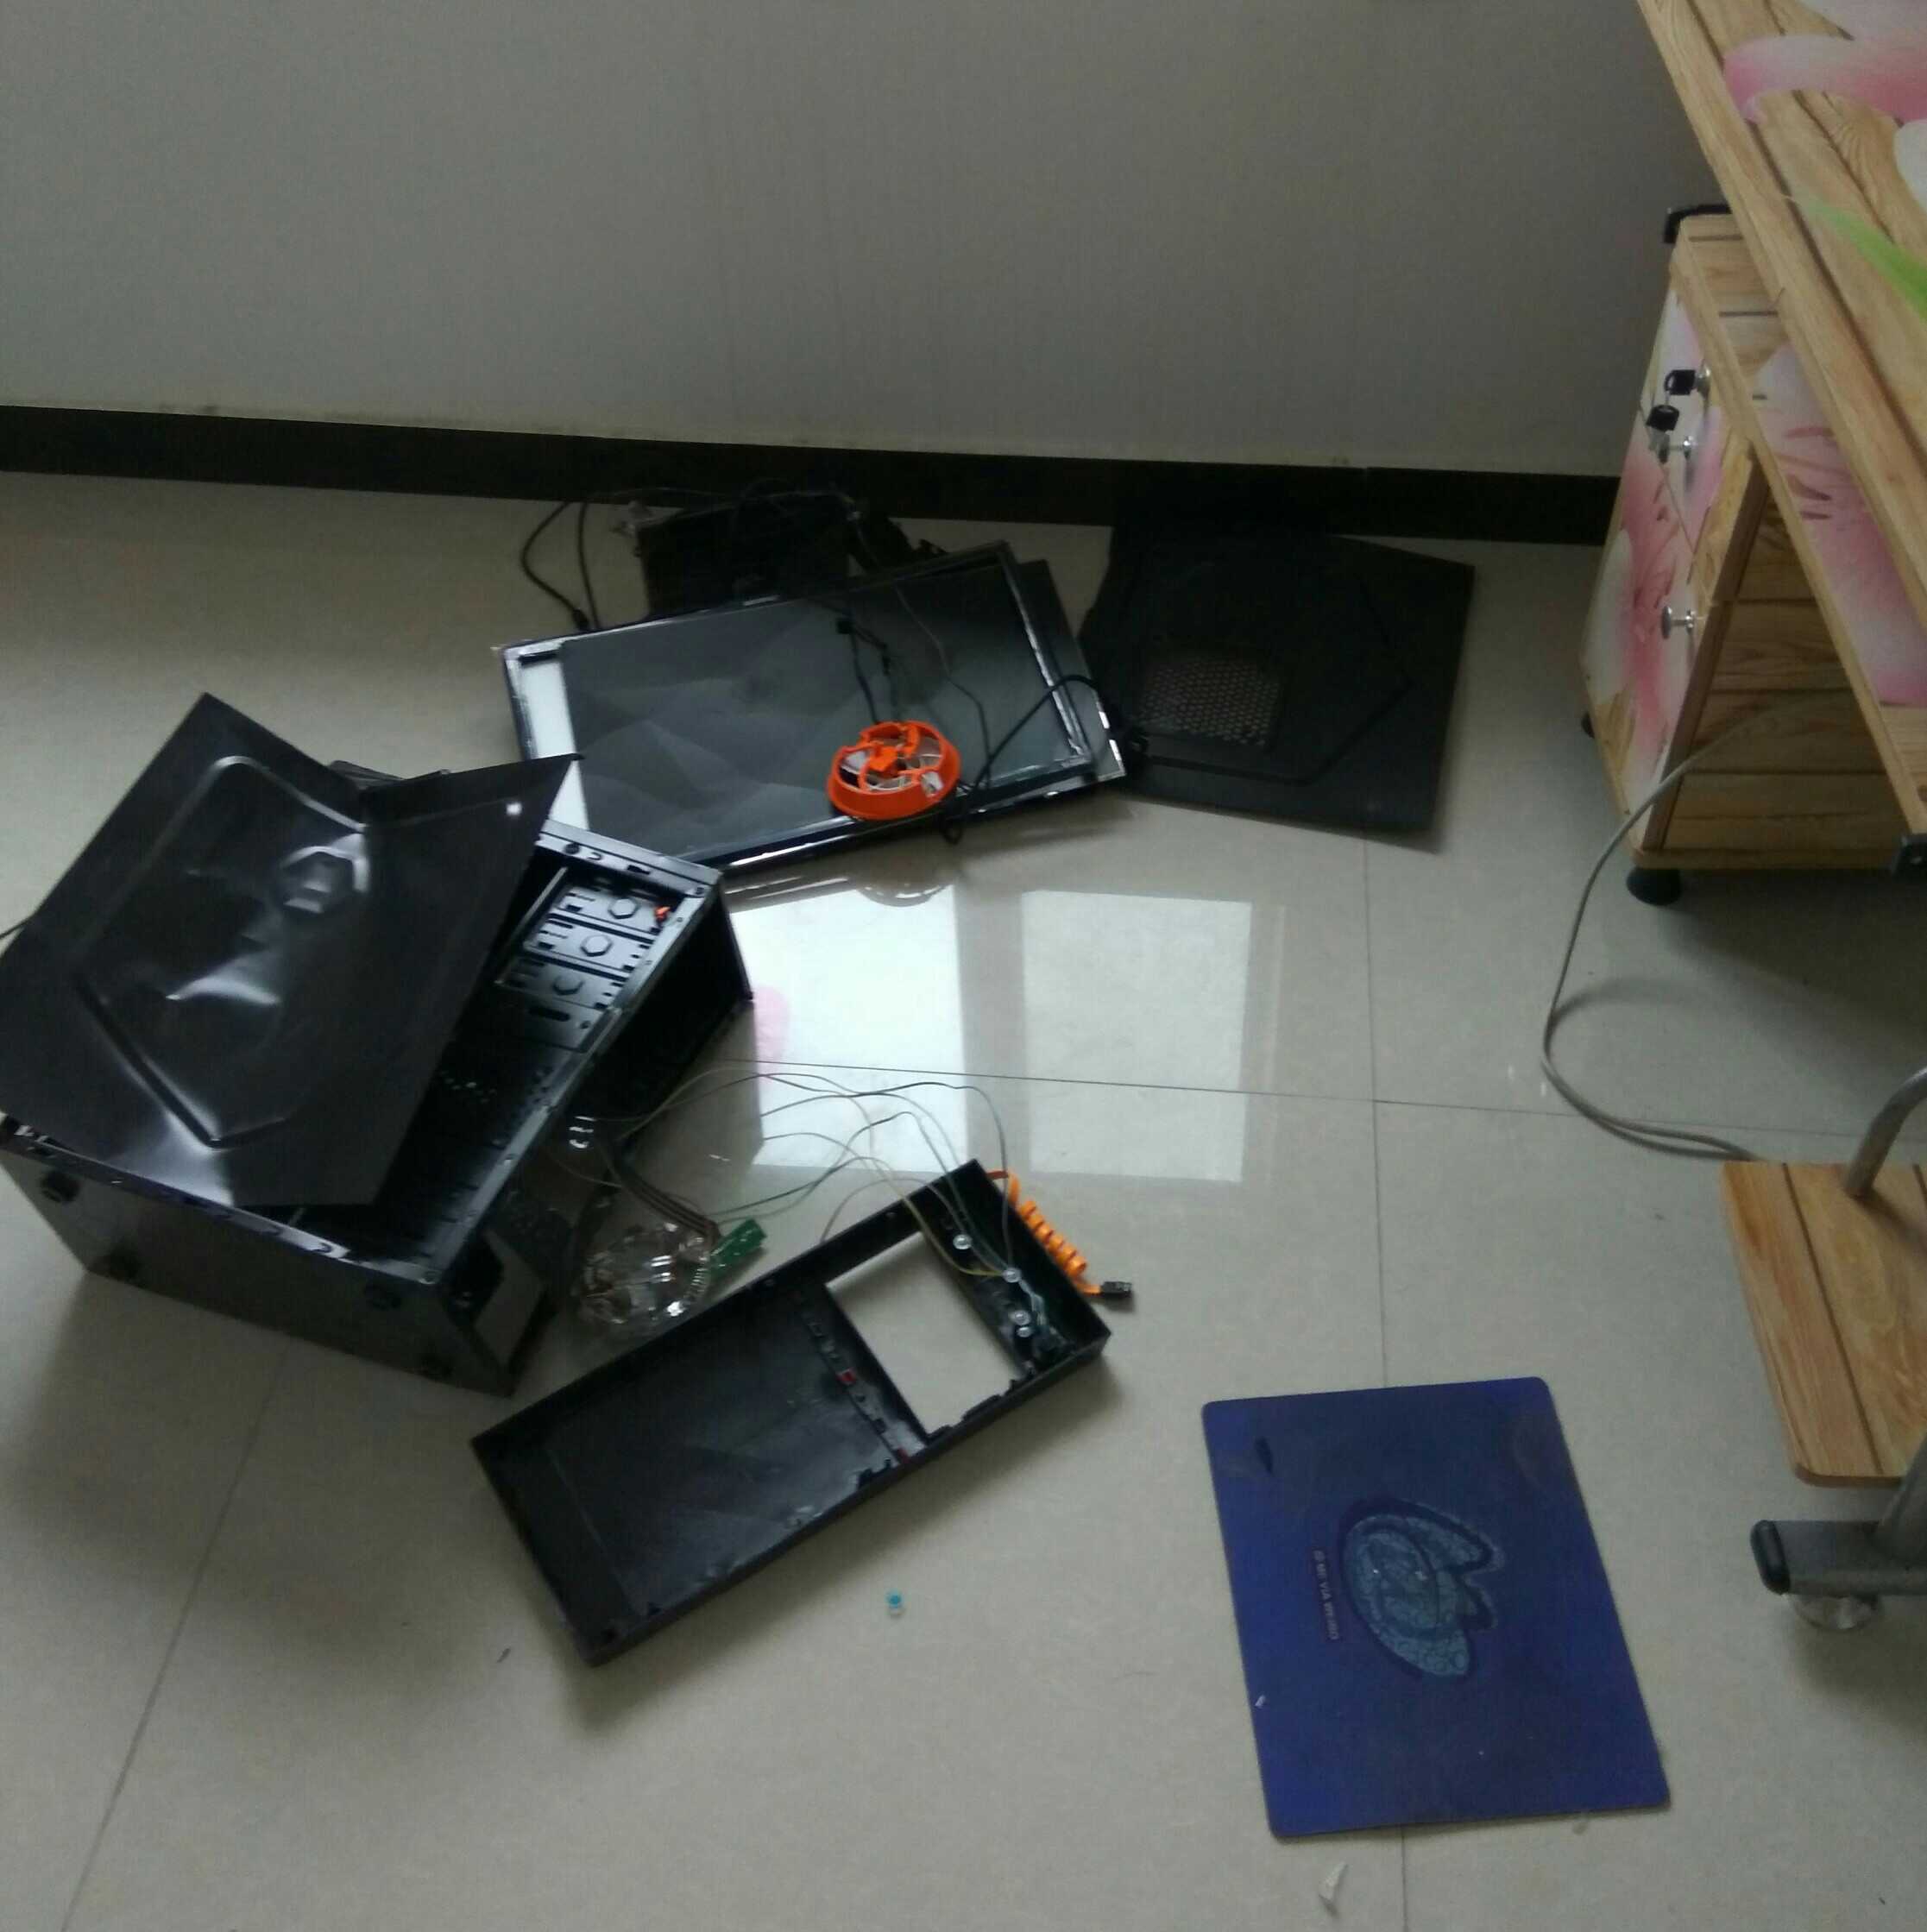 拆修一台被暴力砸碎的笔记本电脑 - 拆机乐园 数码之家